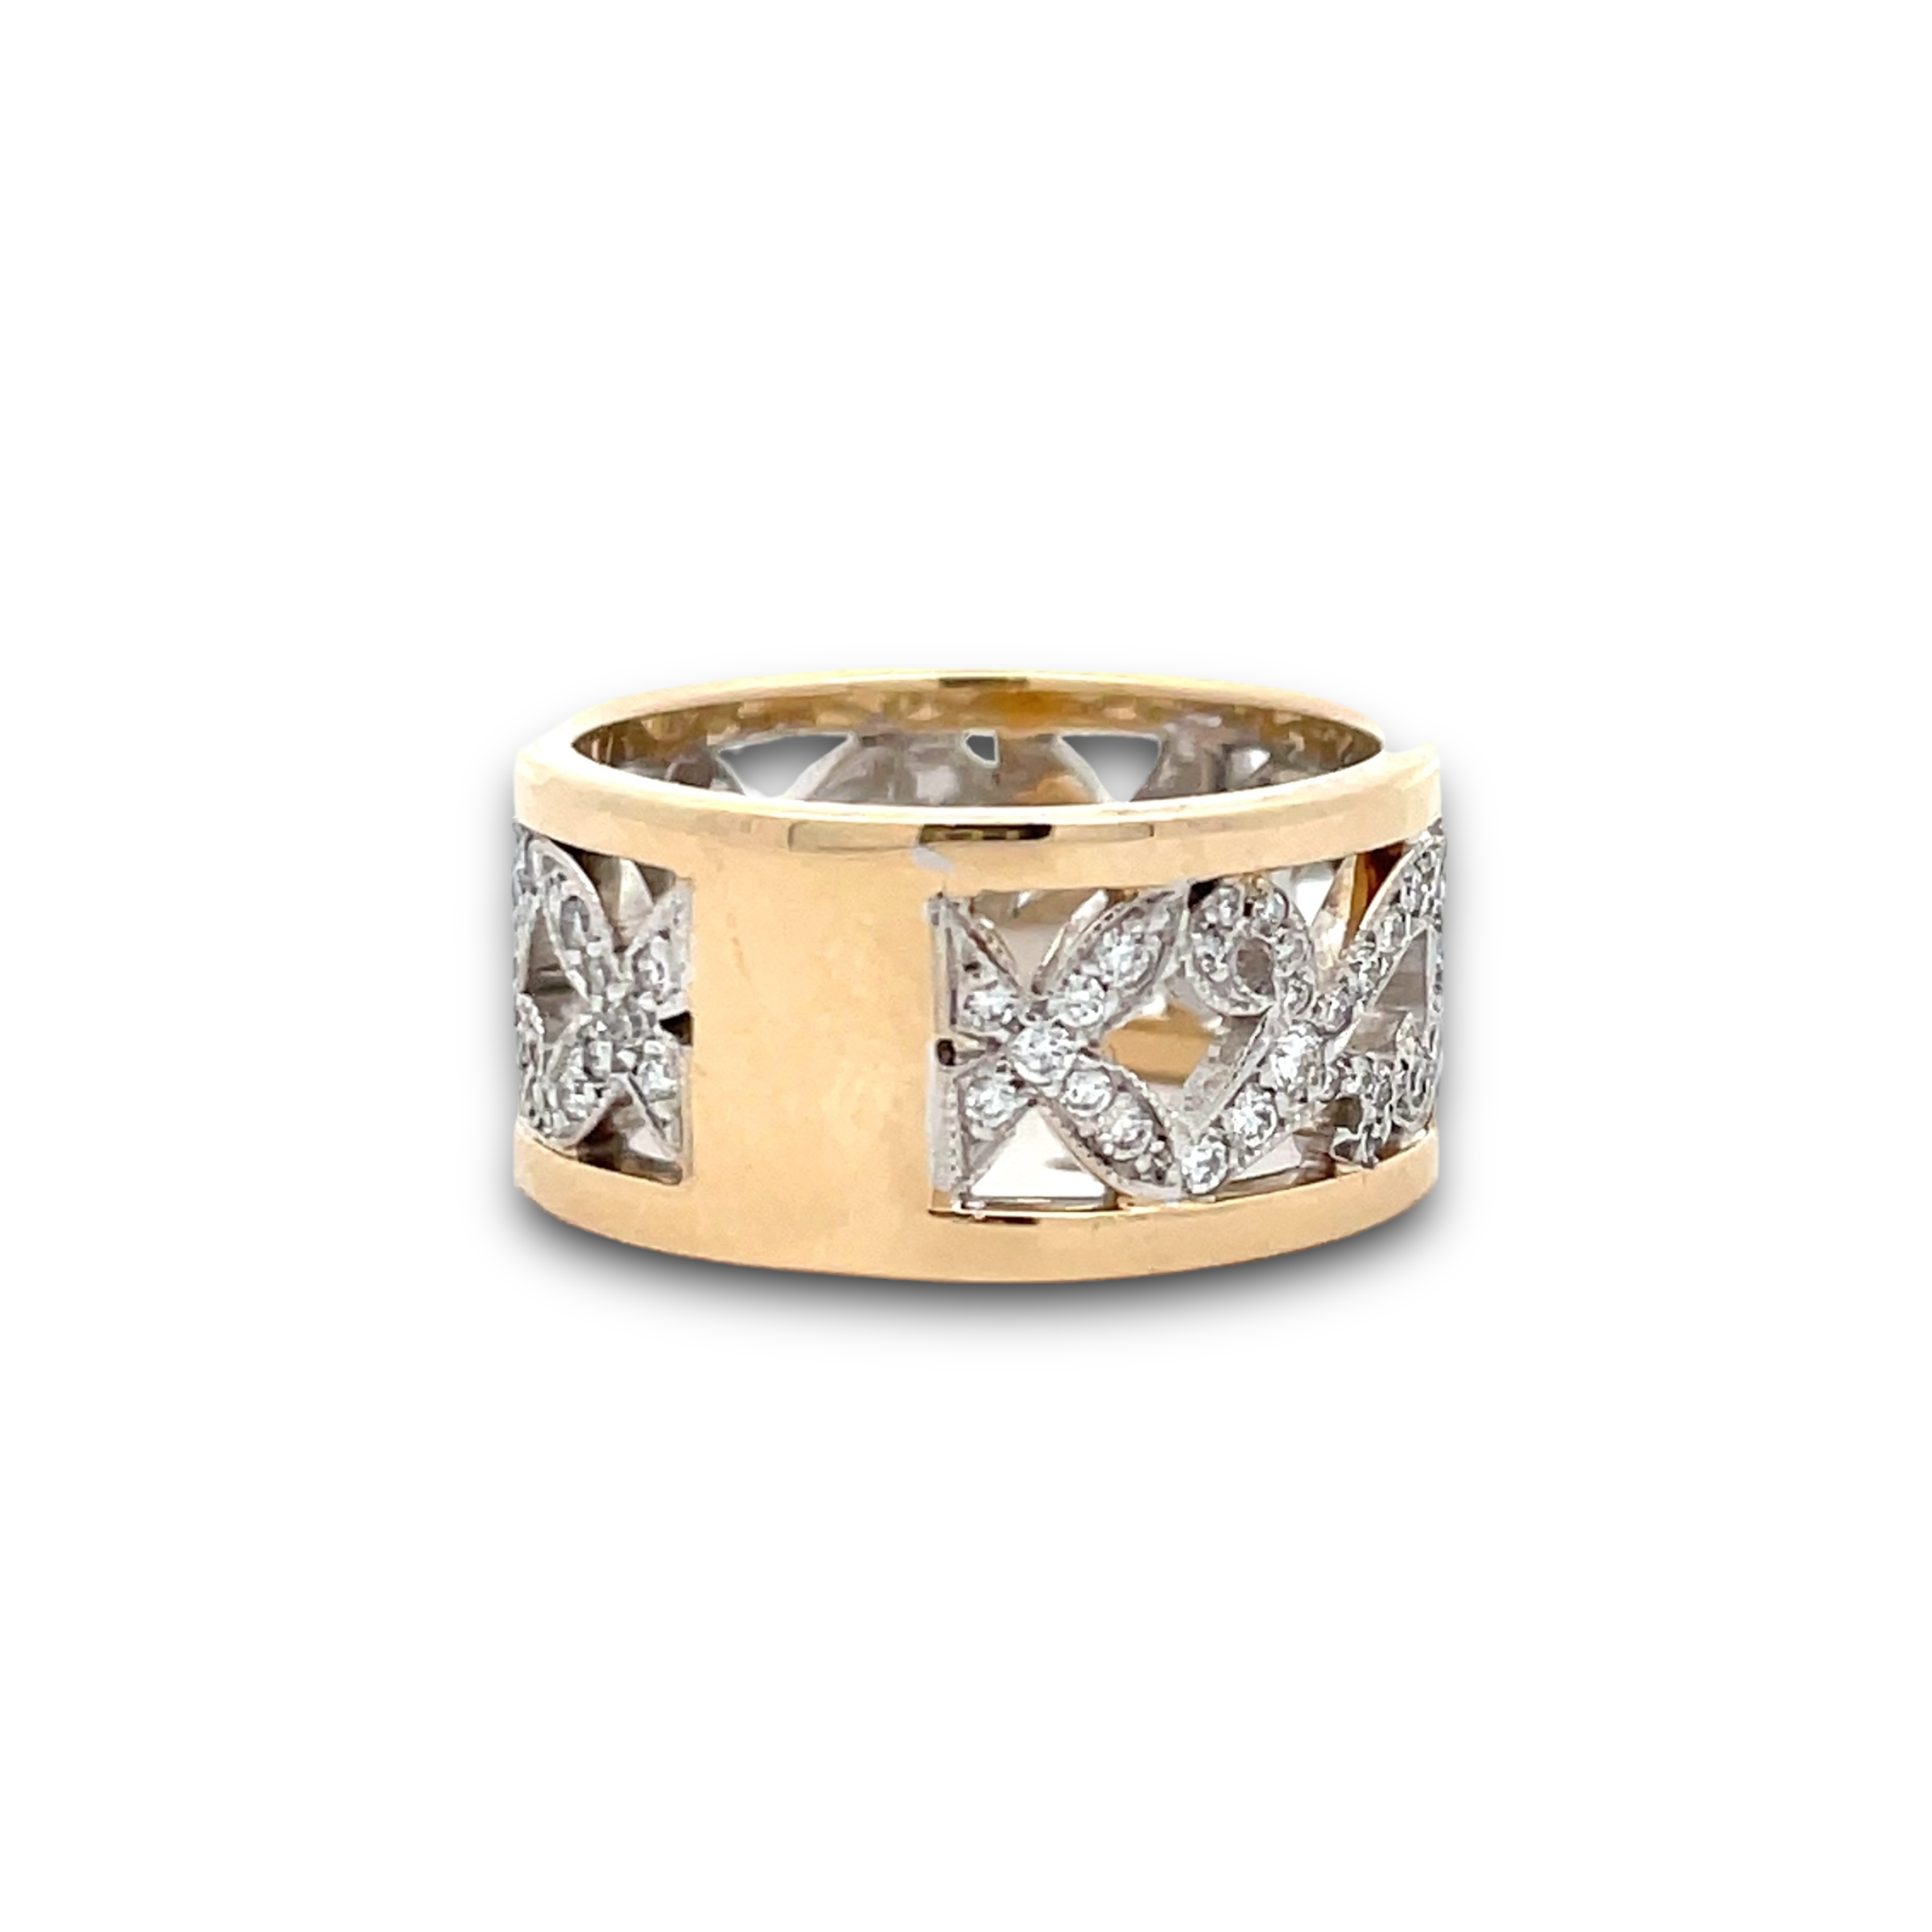 Fiorella Diamond Ring in Two-Tone White & Yellow Gold